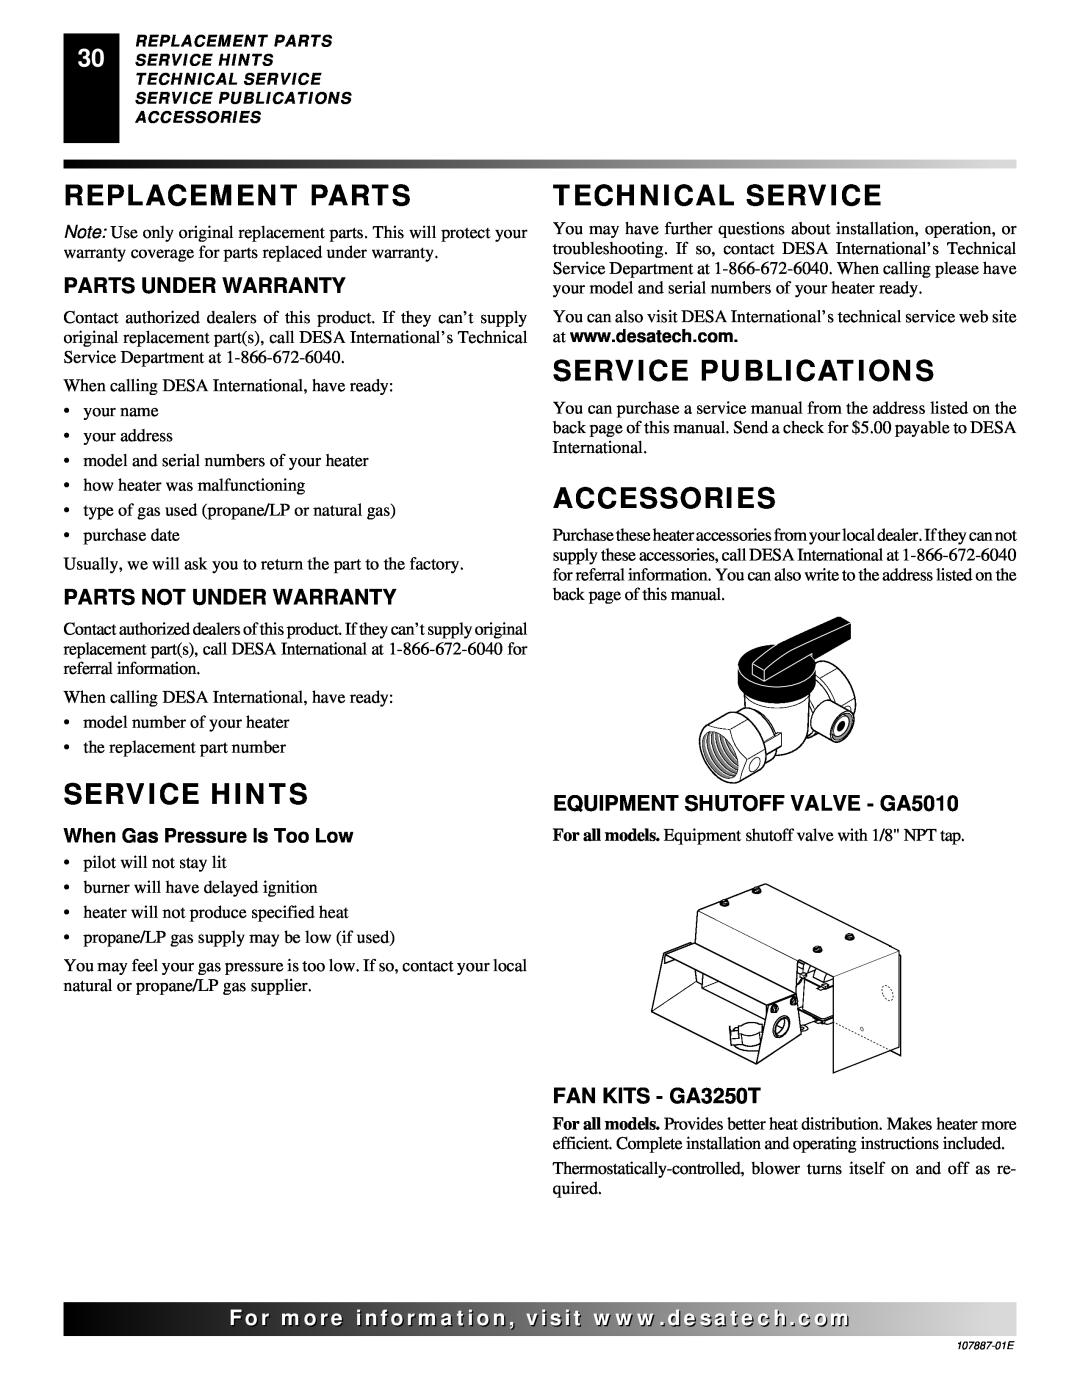 Desa VP16T Replacement Parts, Service Hints, Technical Service, Service Publications, Accessories, Parts Under Warranty 